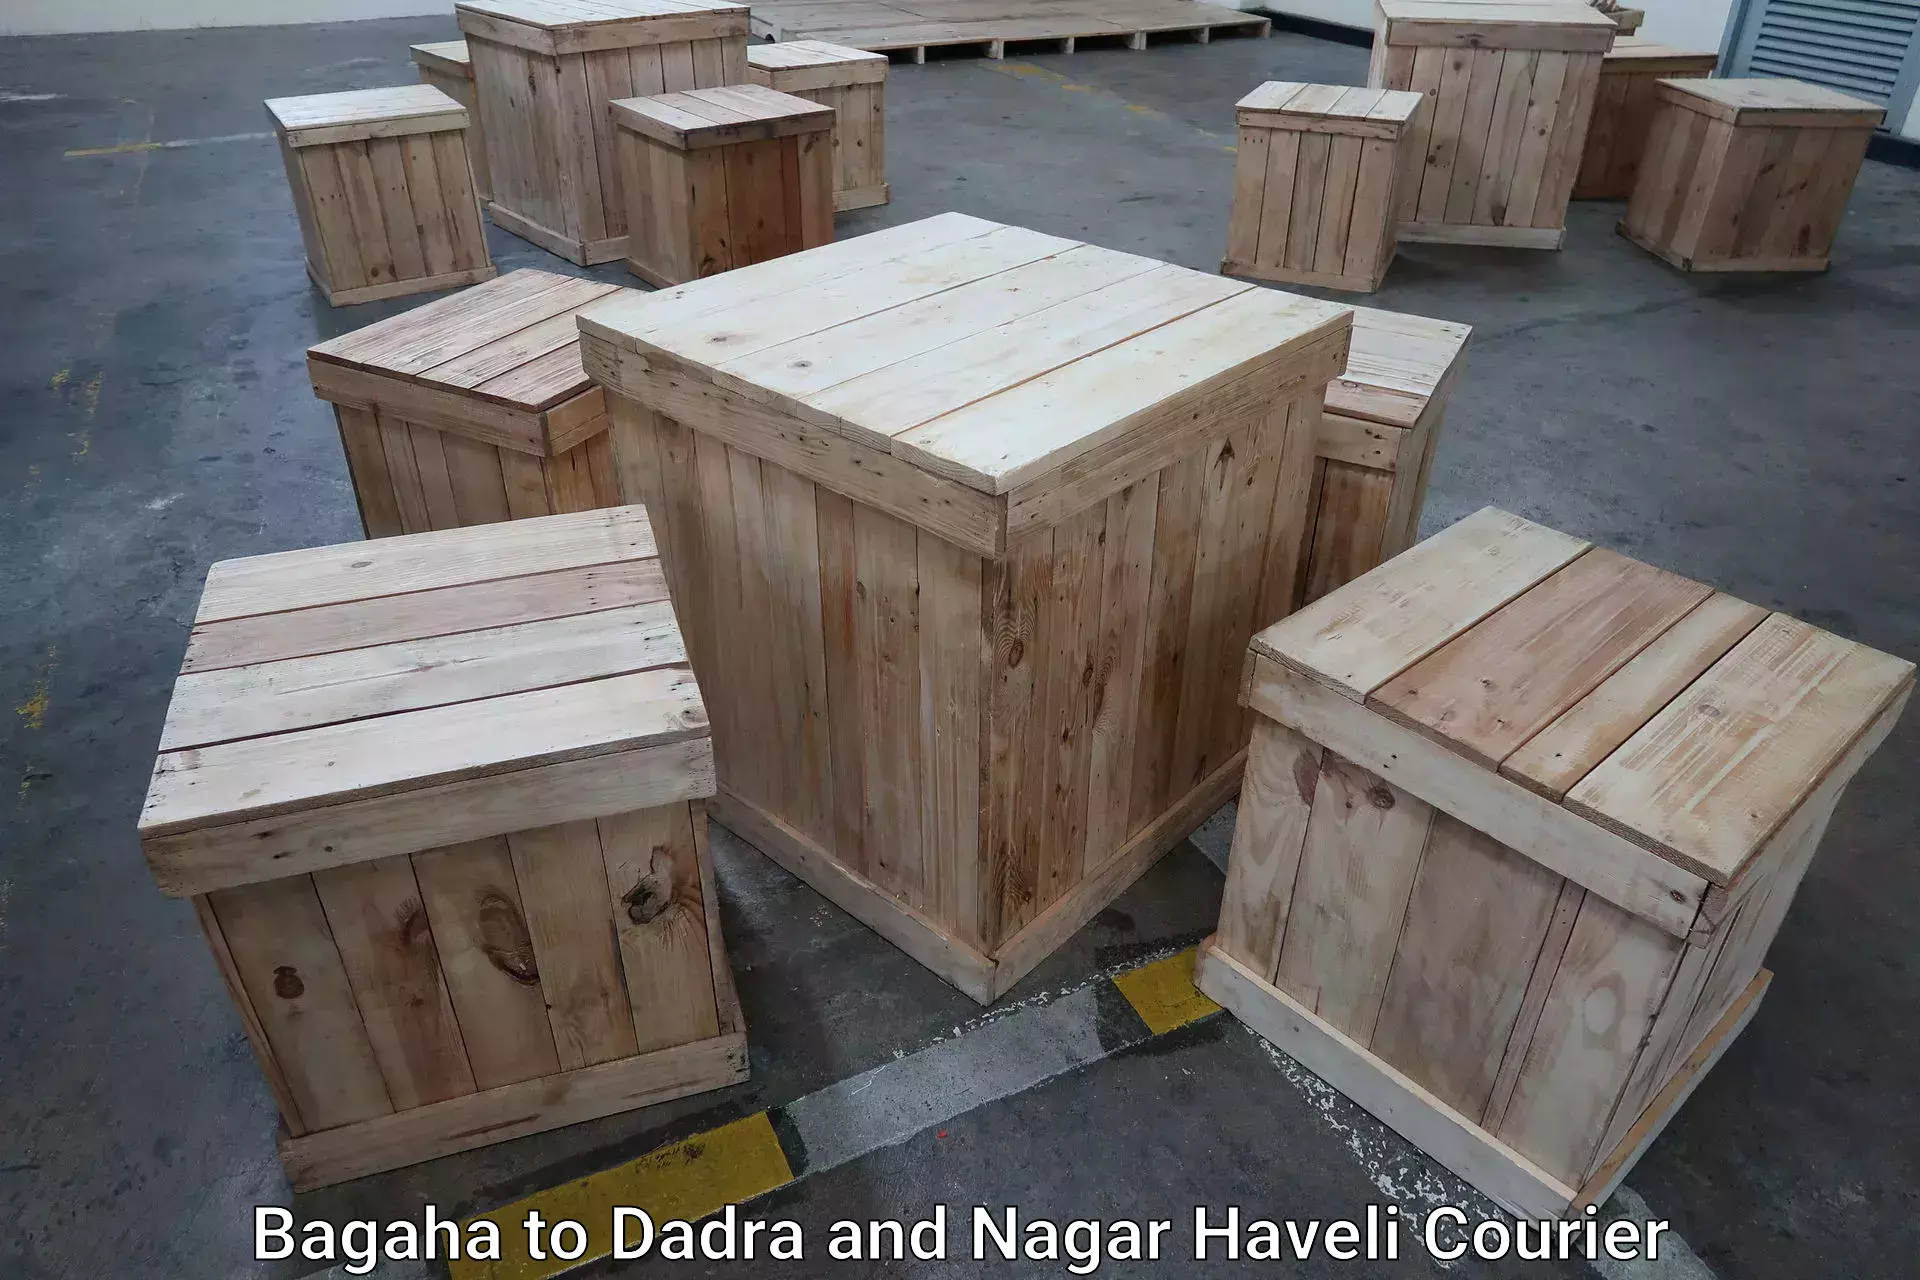 Luggage shipping planner Bagaha to Dadra and Nagar Haveli